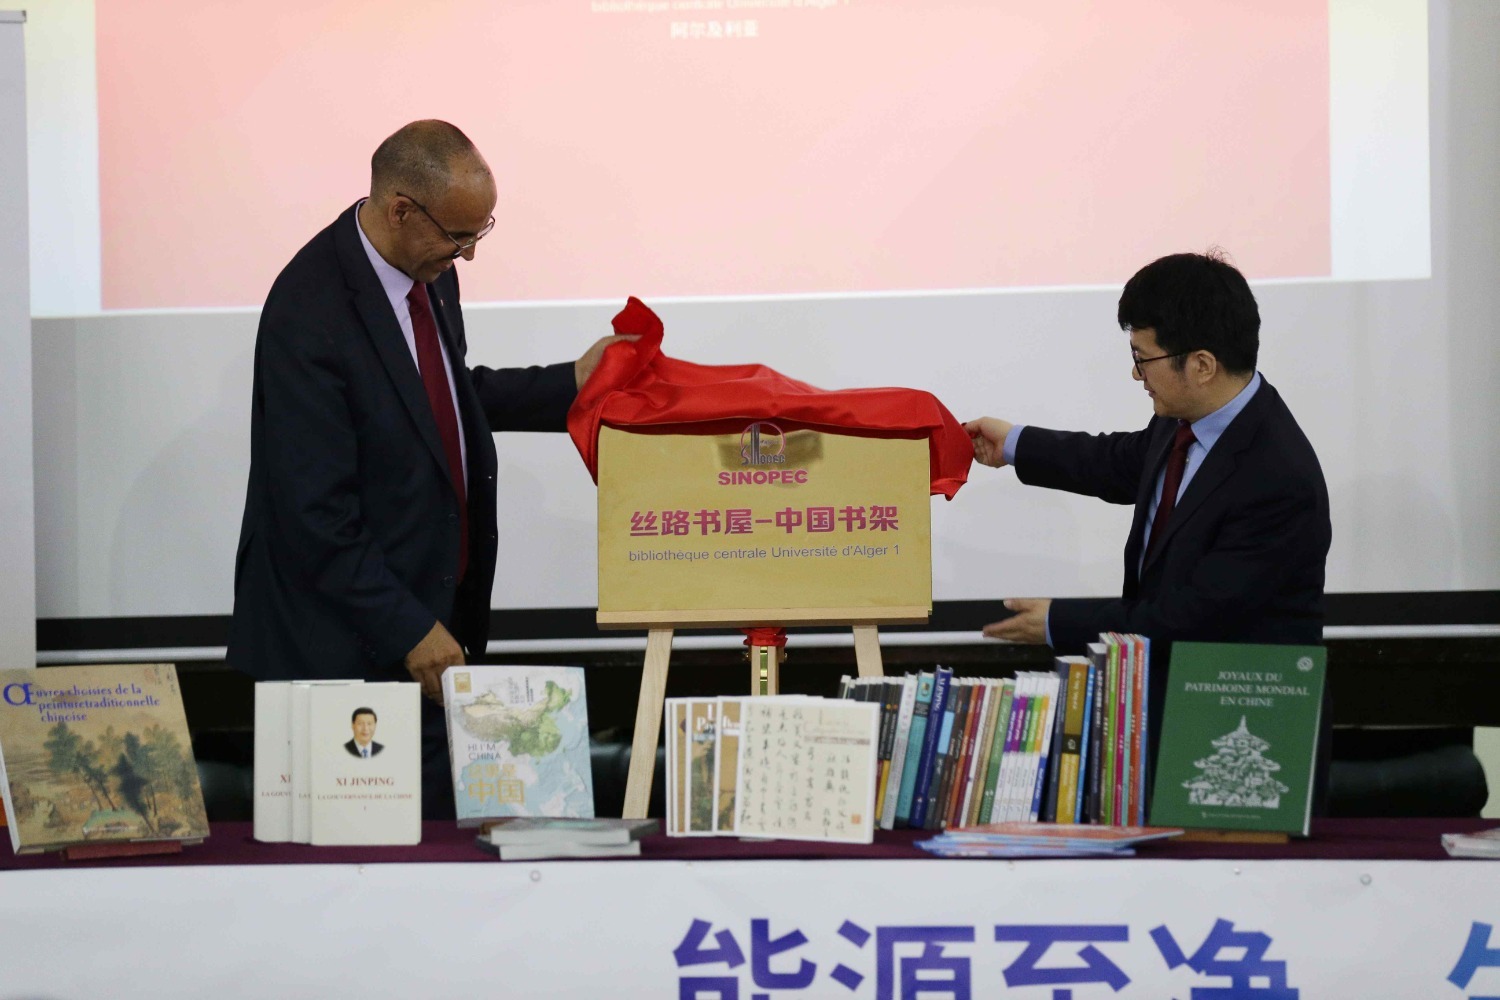 افتتاح رف الكتب الصينية في جامعة الجزائر 1